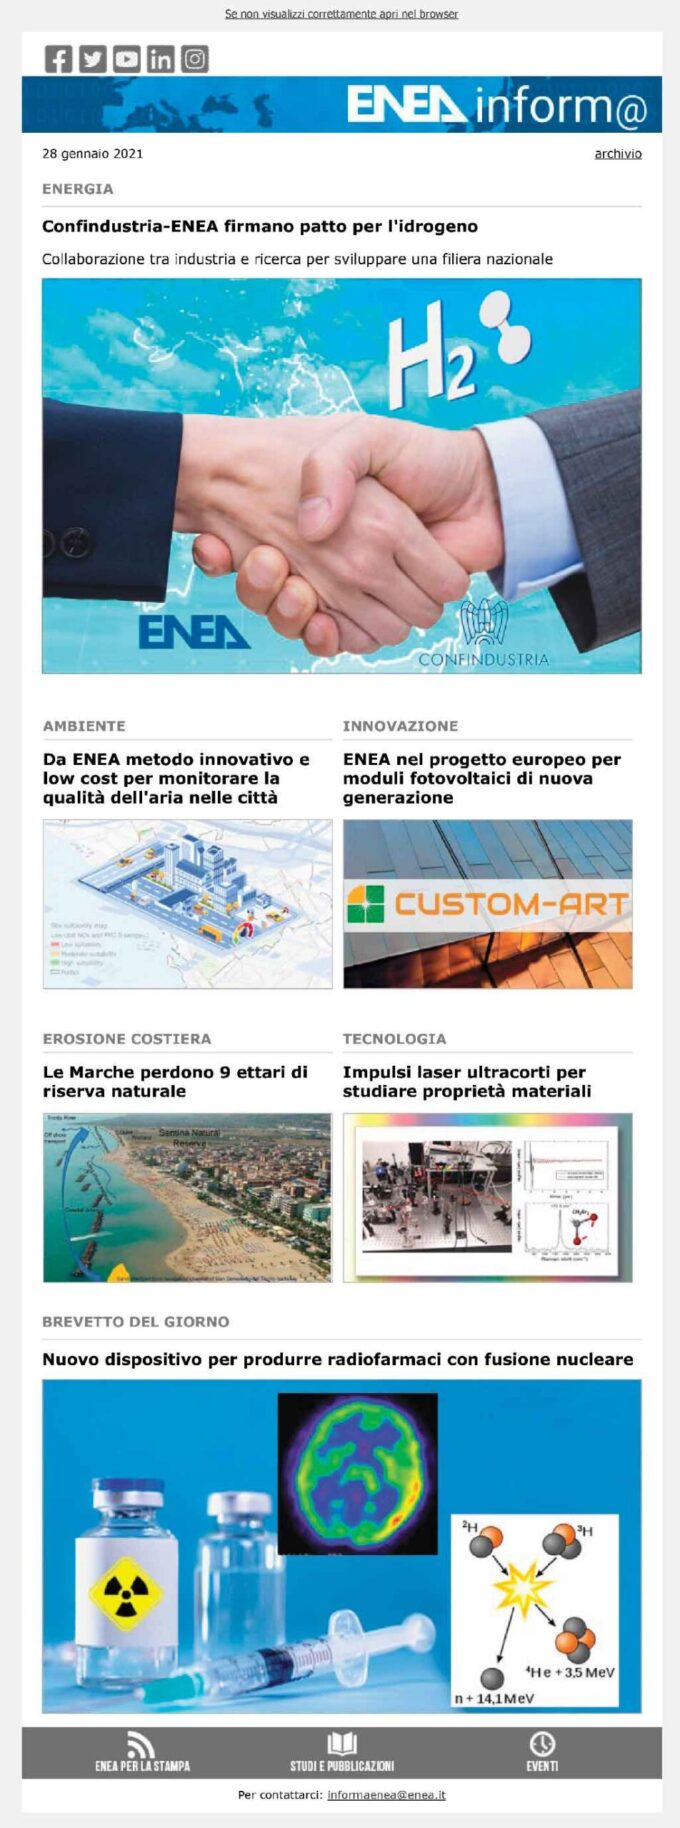 Innovazione: ENEA in progetto europeo per moduli fotovoltaici di nuova generazione